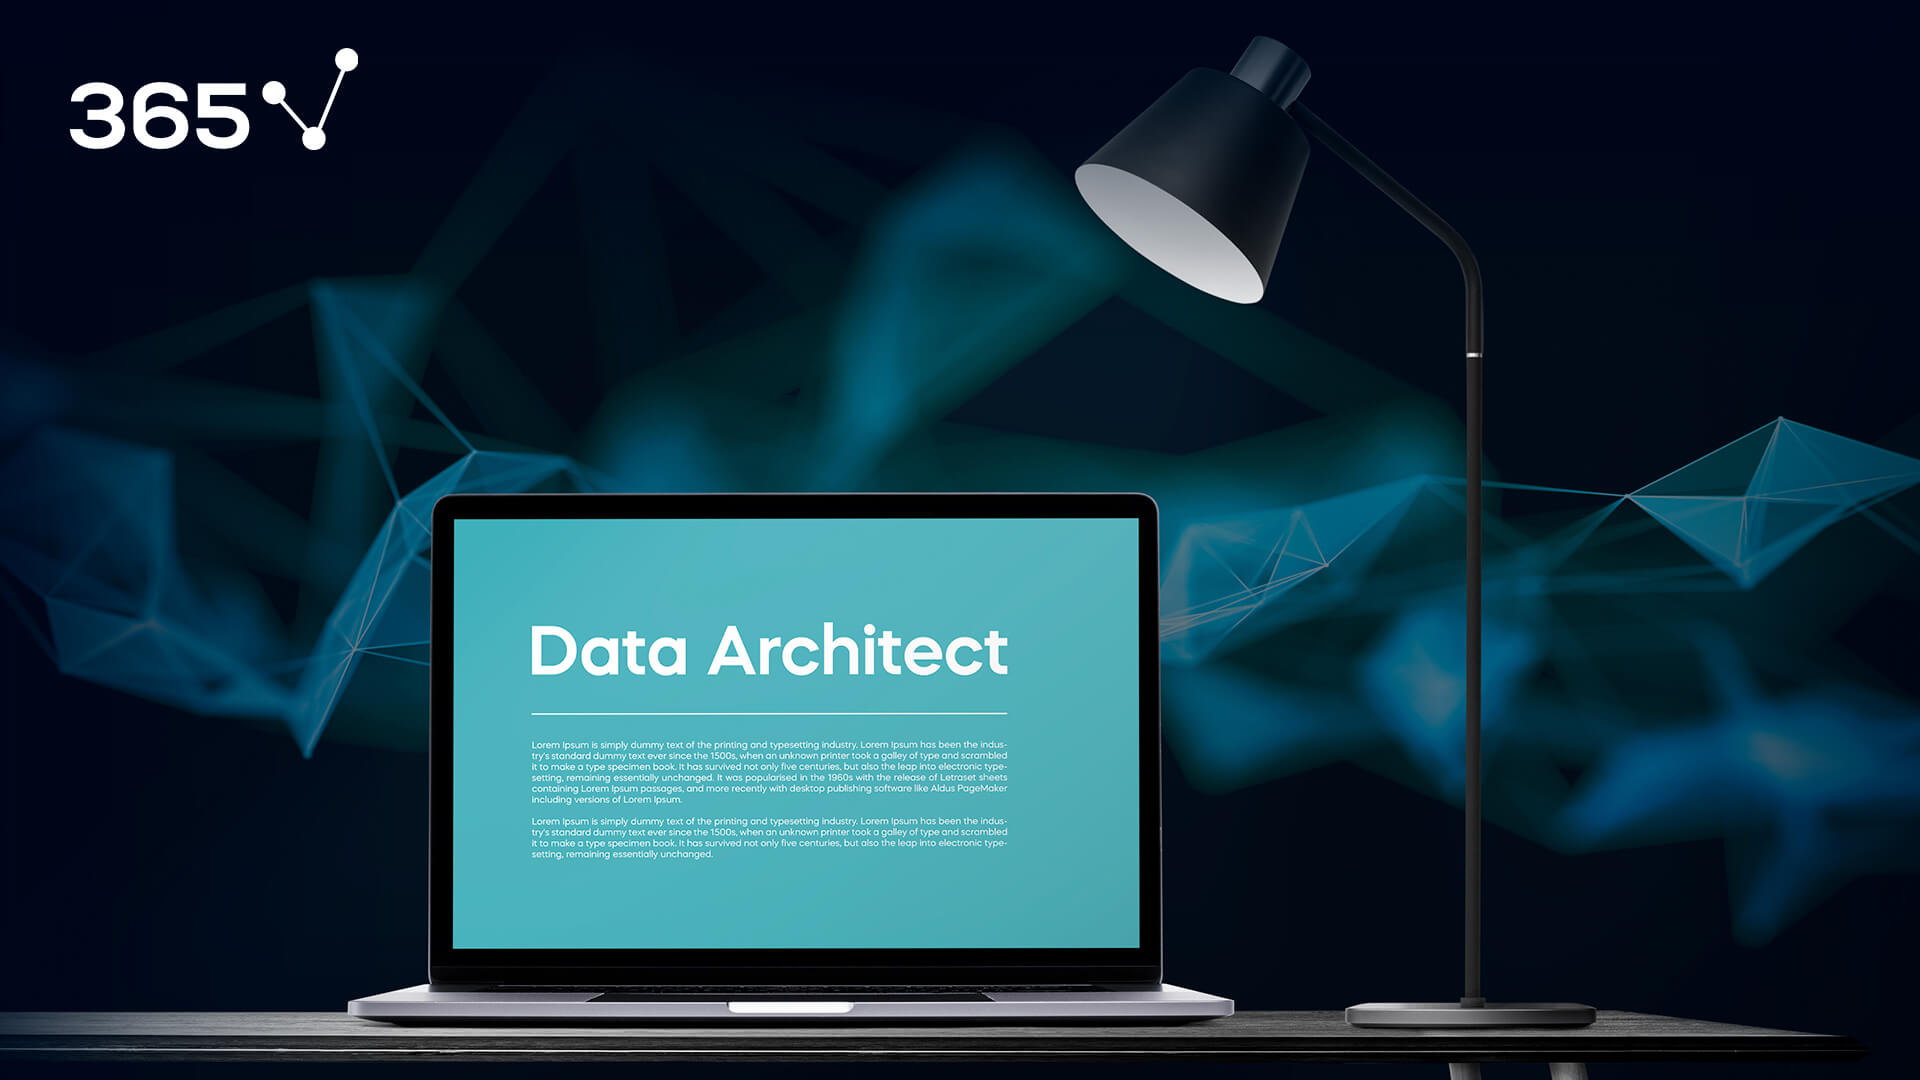 Bạn là Data Architect và đang muốn tìm đến một công ty tiềm năng? Hãy tạo ấn tượng mạnh mẽ với mẫu thư xin việc Data Architect chuyên nghiệp. Bạn sẽ có được những gợi ý chi tiết từ bản thiết kế này, từ cách bố trí, phối màu, đến nội dung. Bạn sẽ chắc chắn thu hút được sự quan tâm của nhà tuyển dụng.